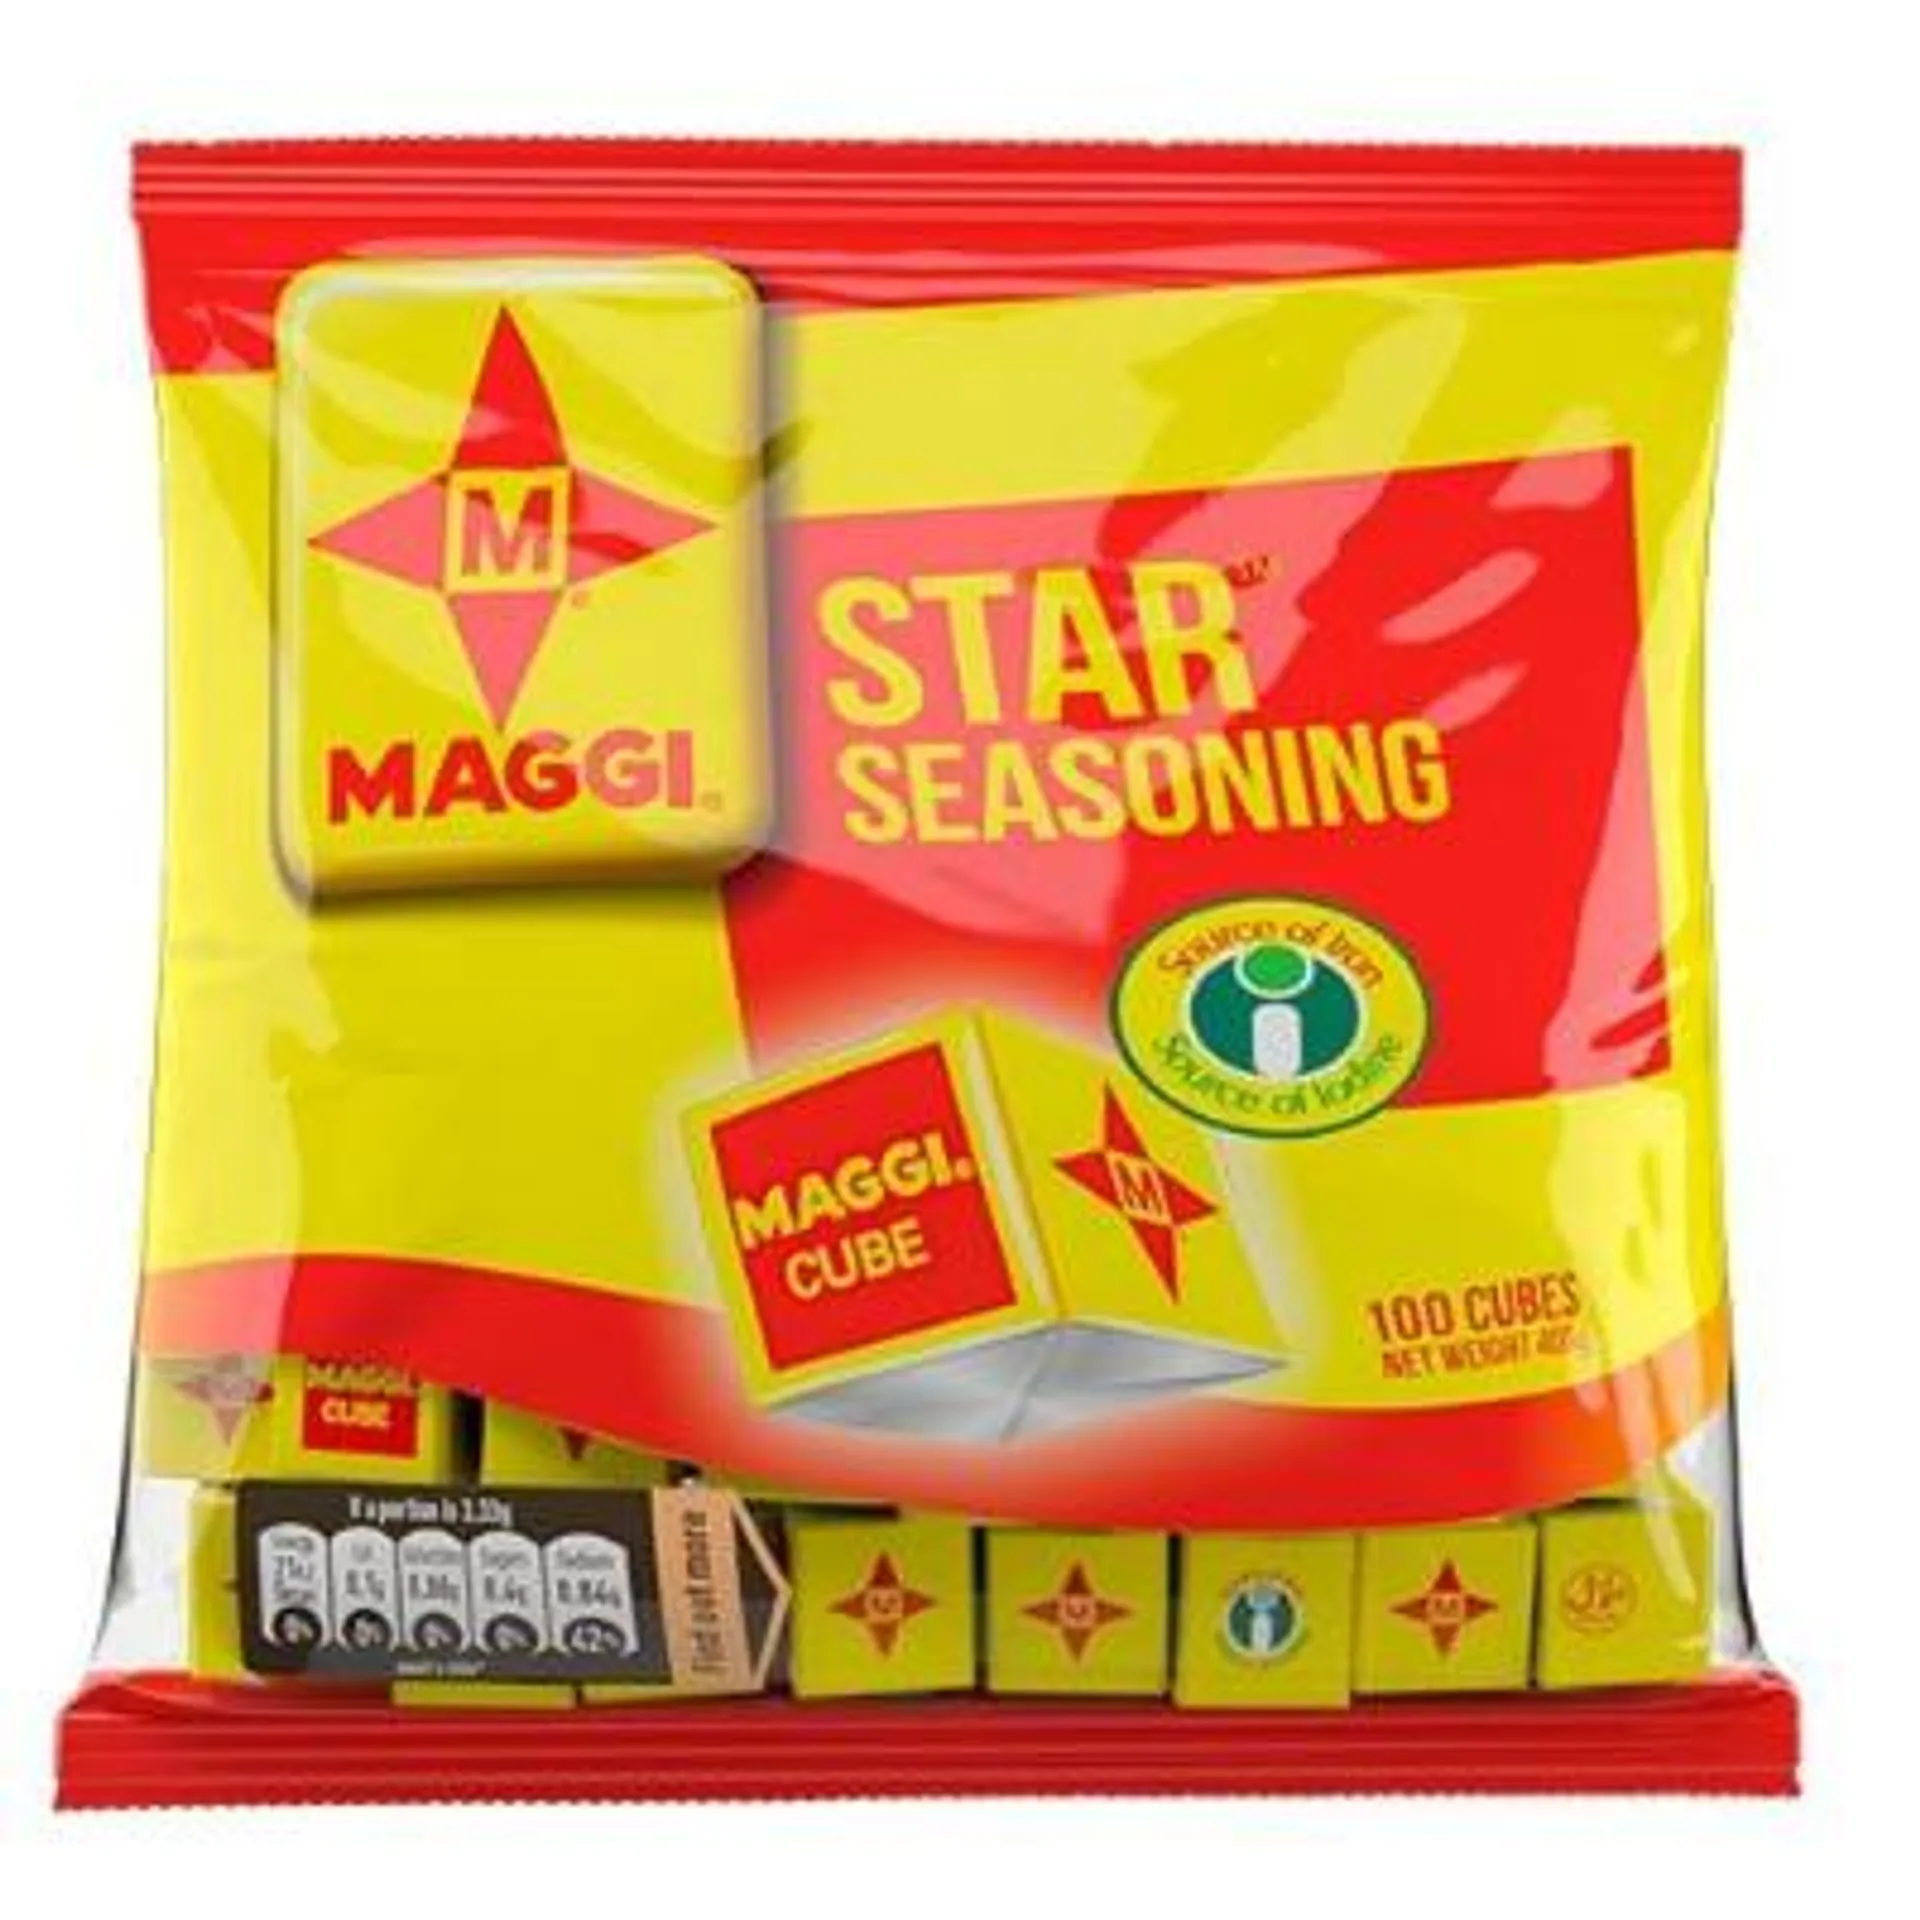 Maggi star seasoning - 400g